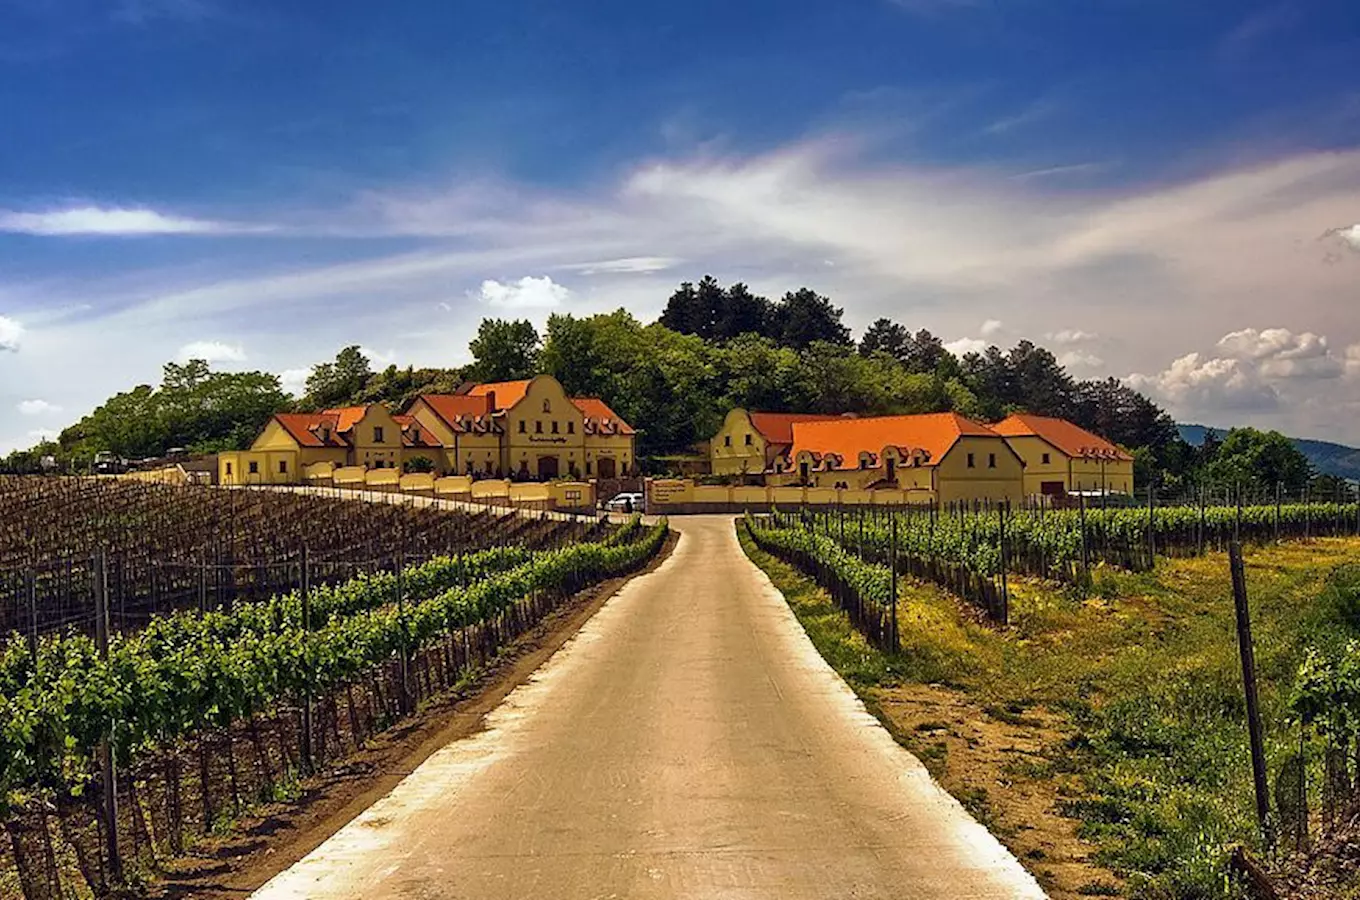 Vinařství U Kapličky v Zaječí – relax uprostřed vinohradů